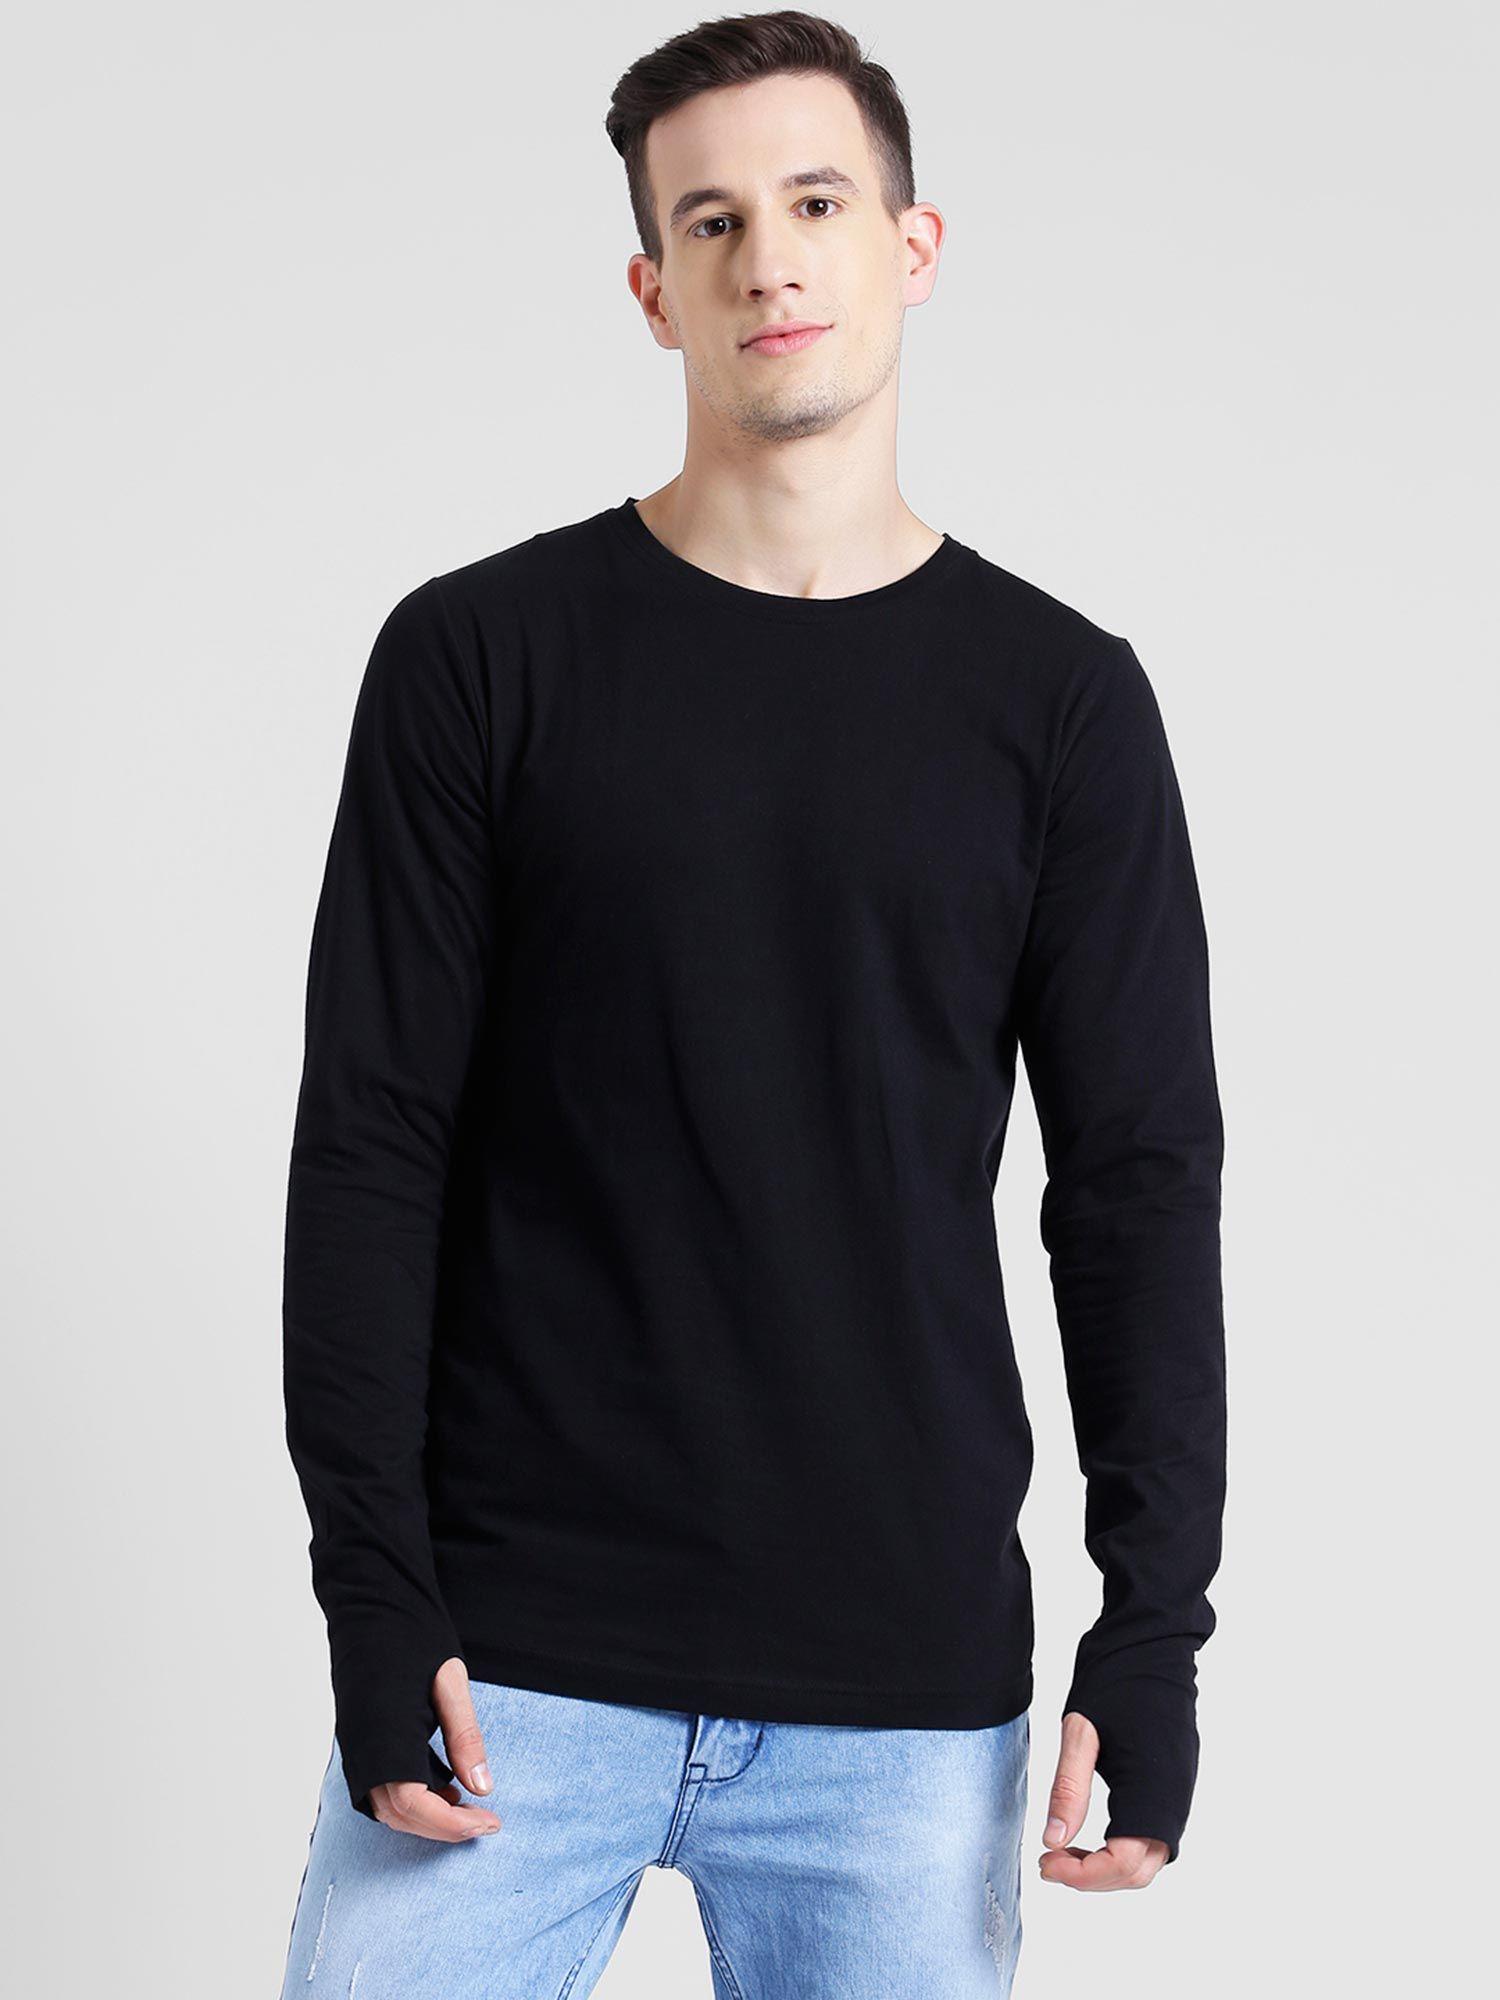 black-thumbhole-full-sleeve-t-shirt-for-men